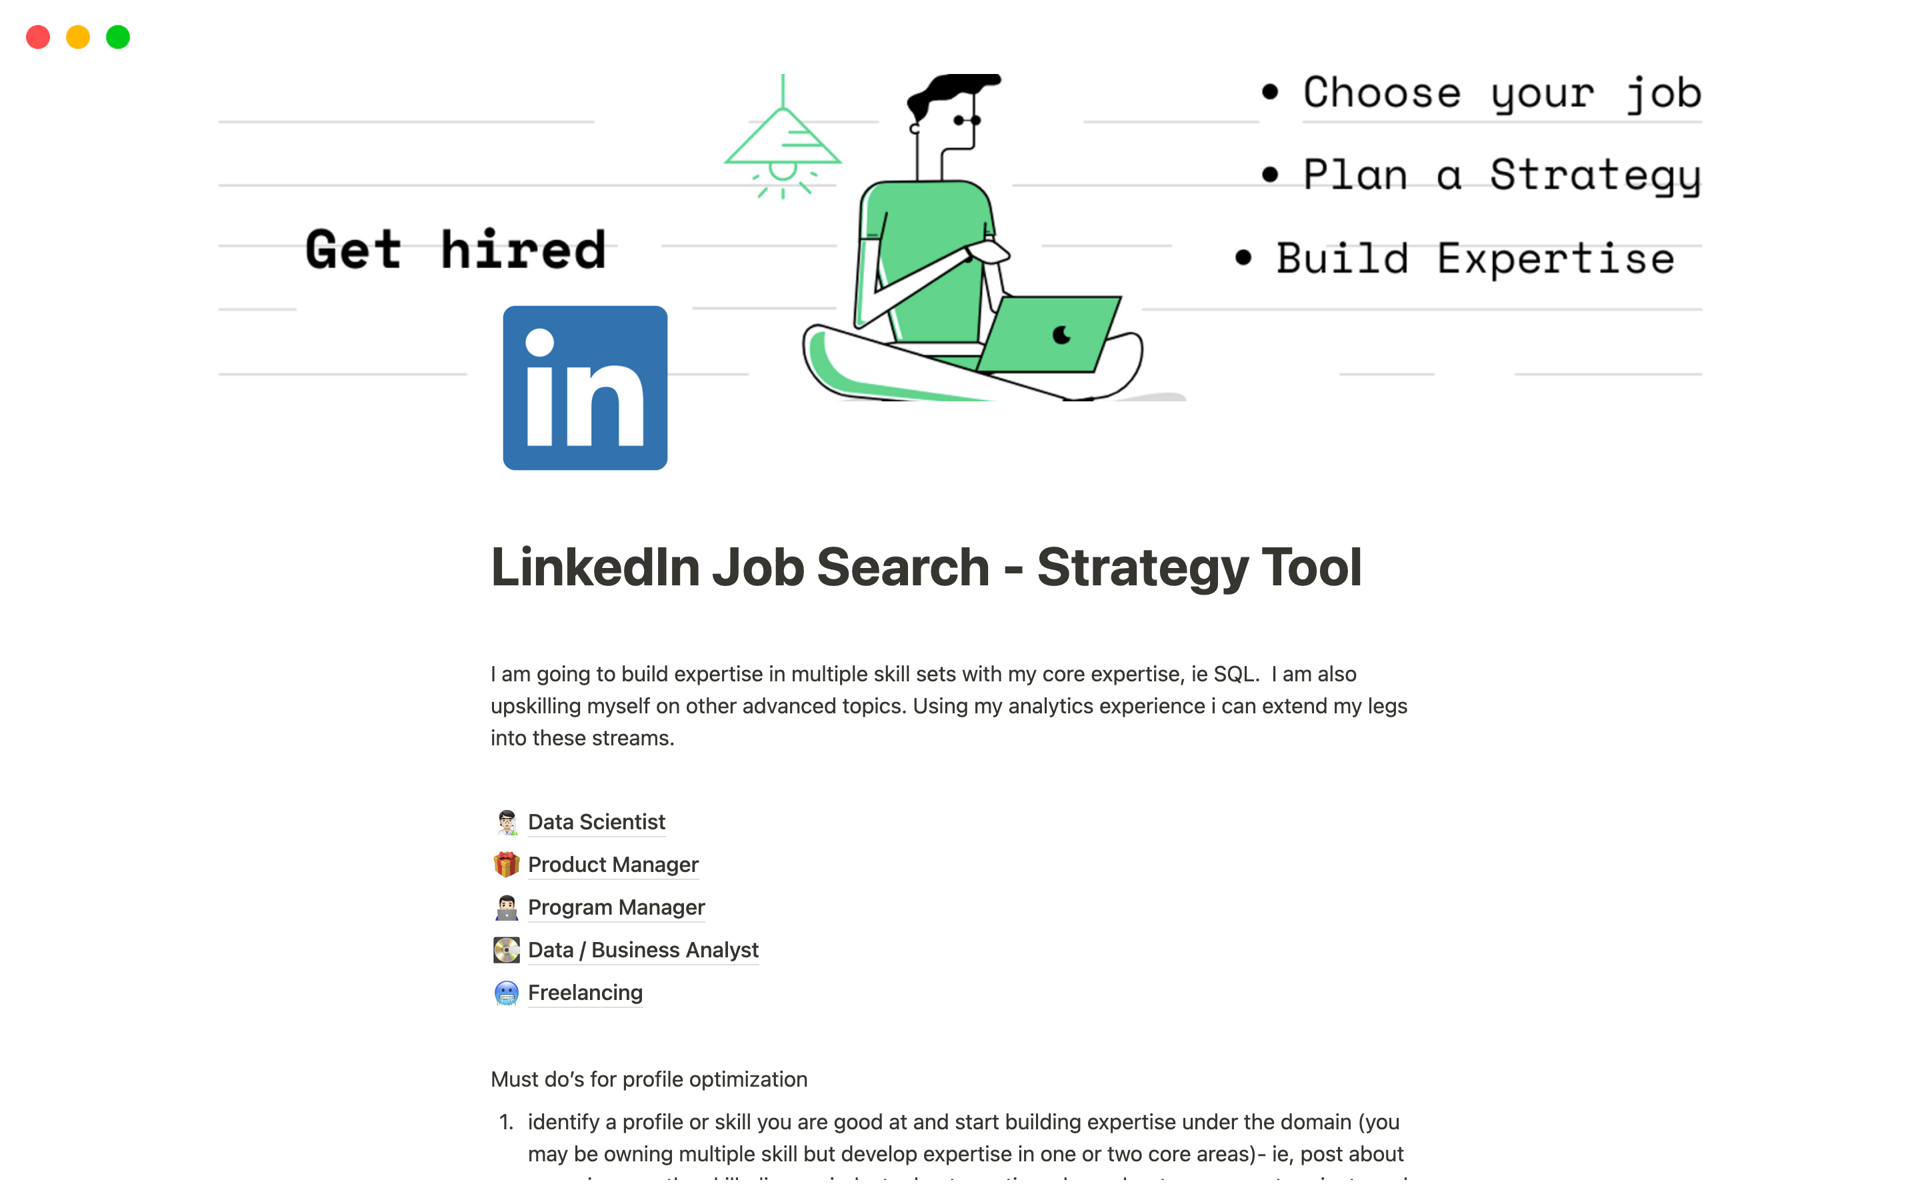 Vista previa de plantilla para LinkedIn Job Search - Strategy Tool